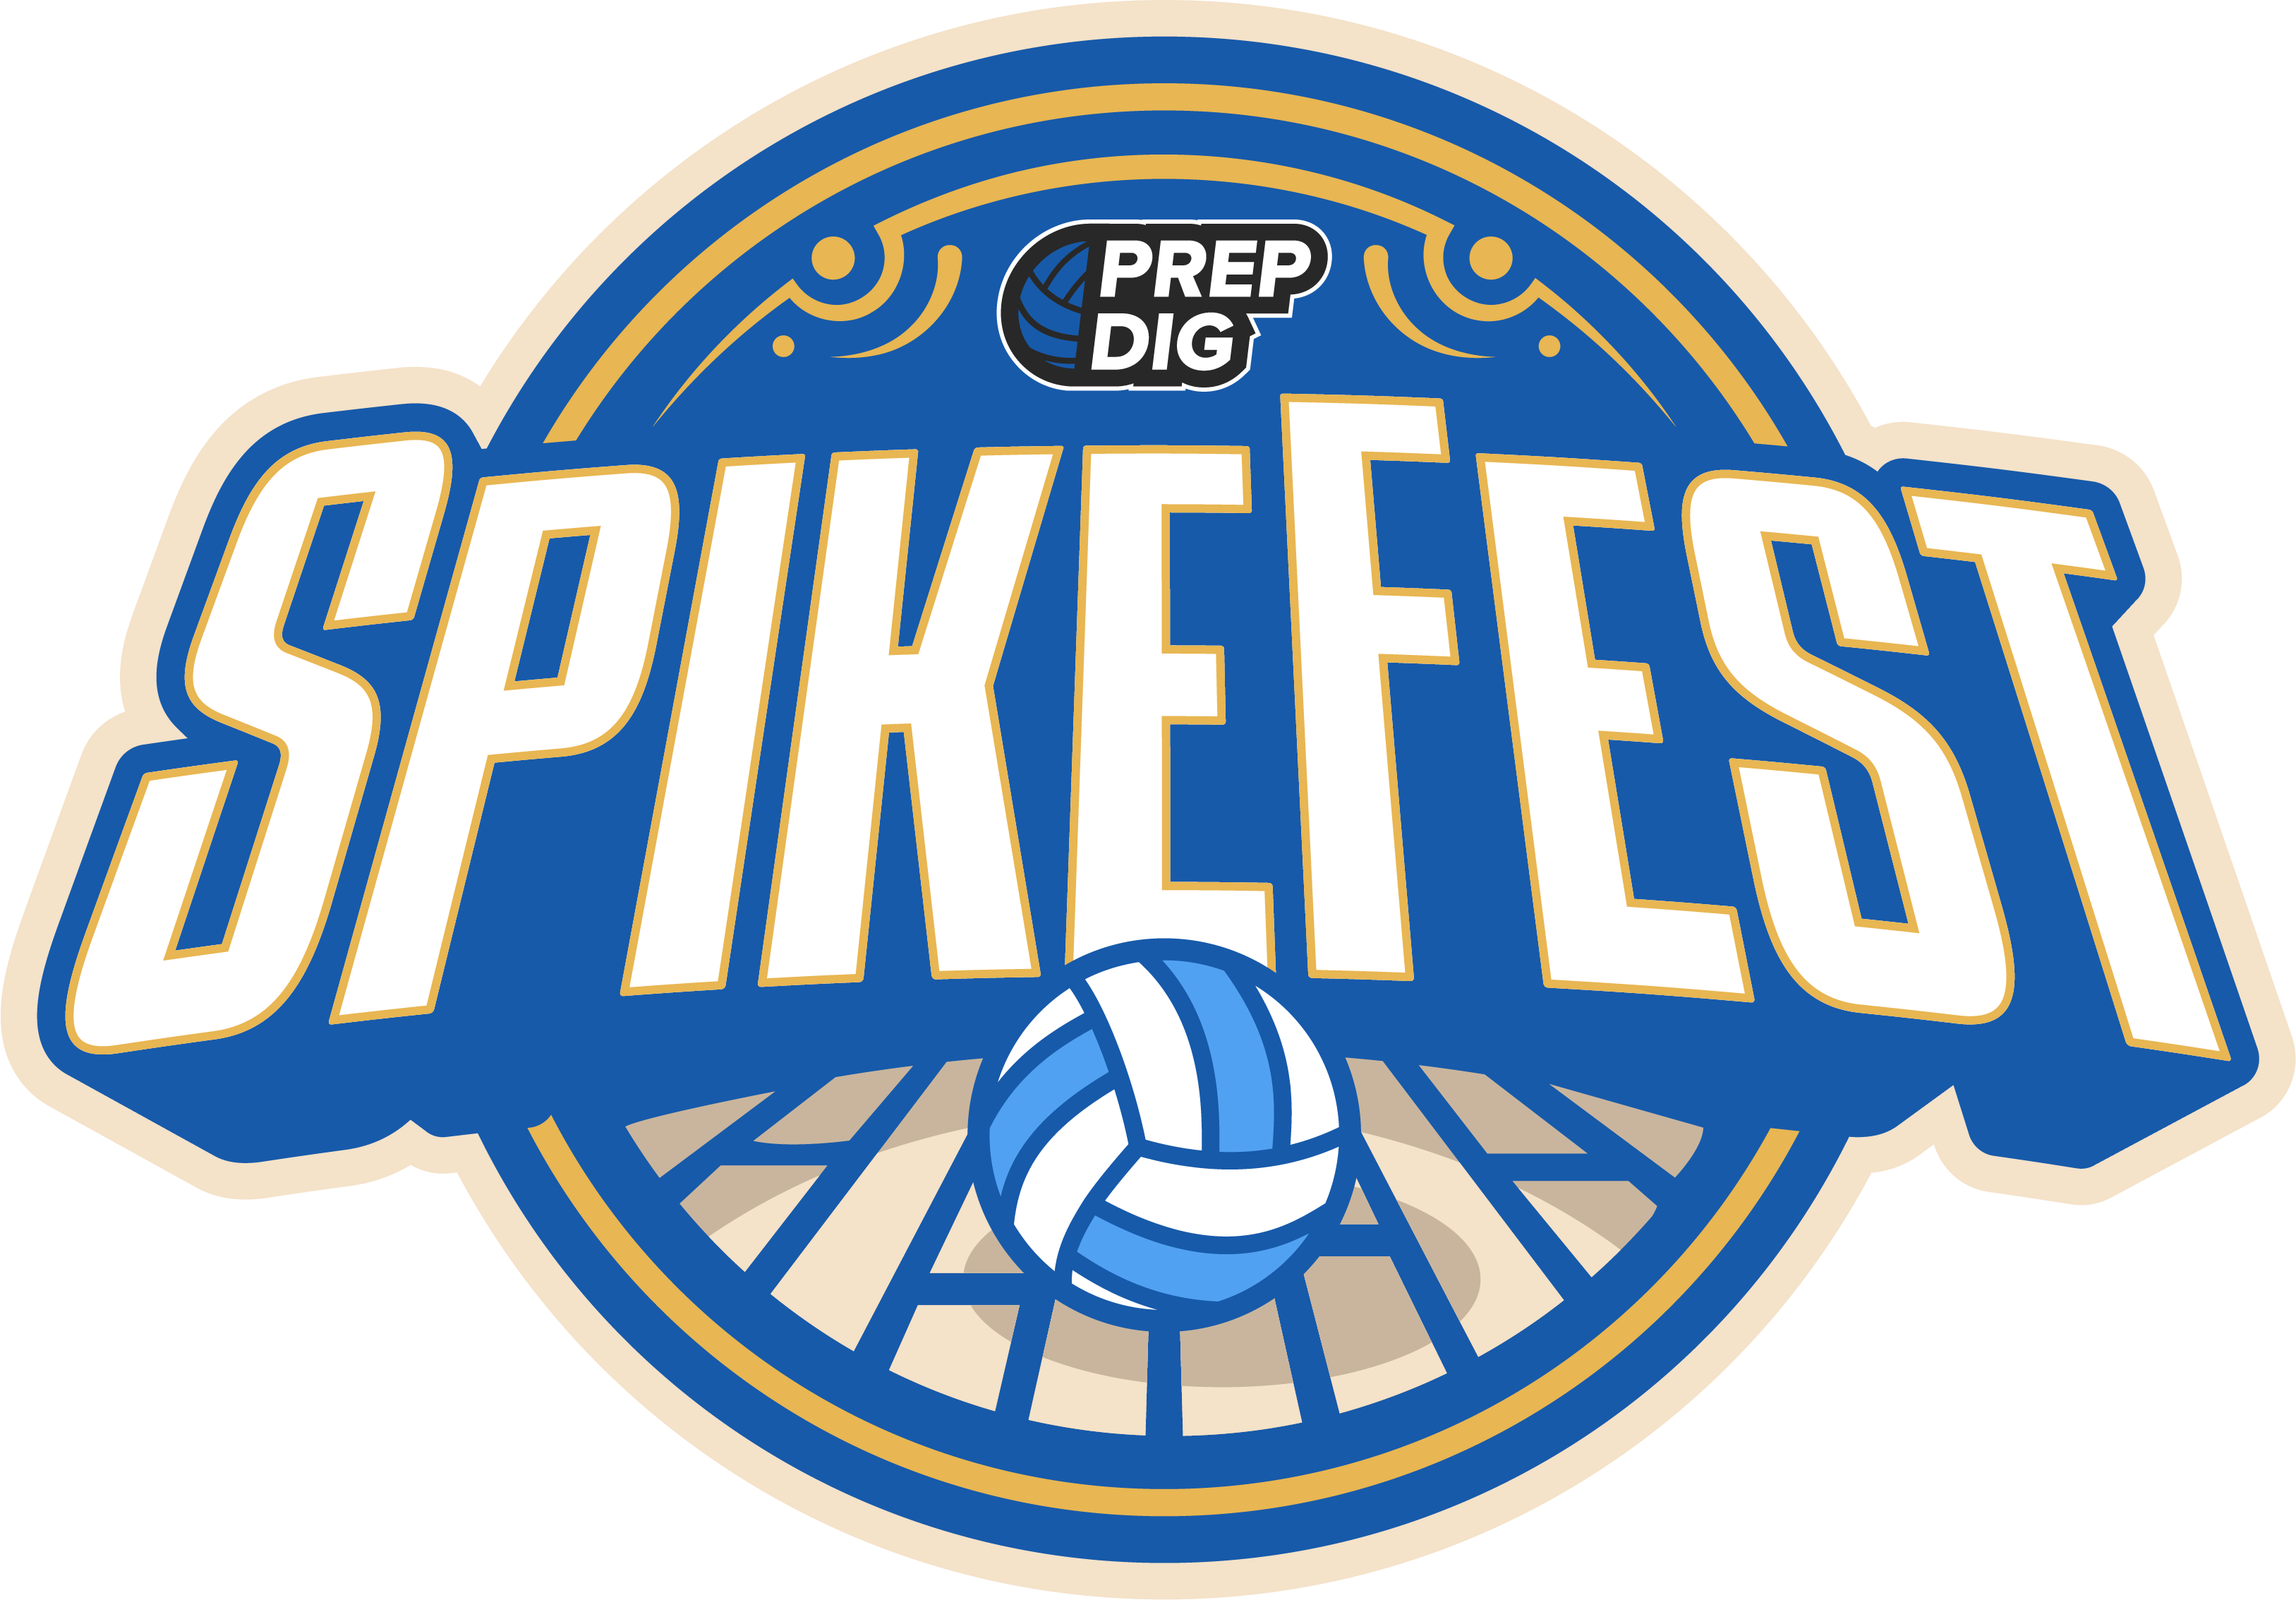 Prep Dig Spikefest